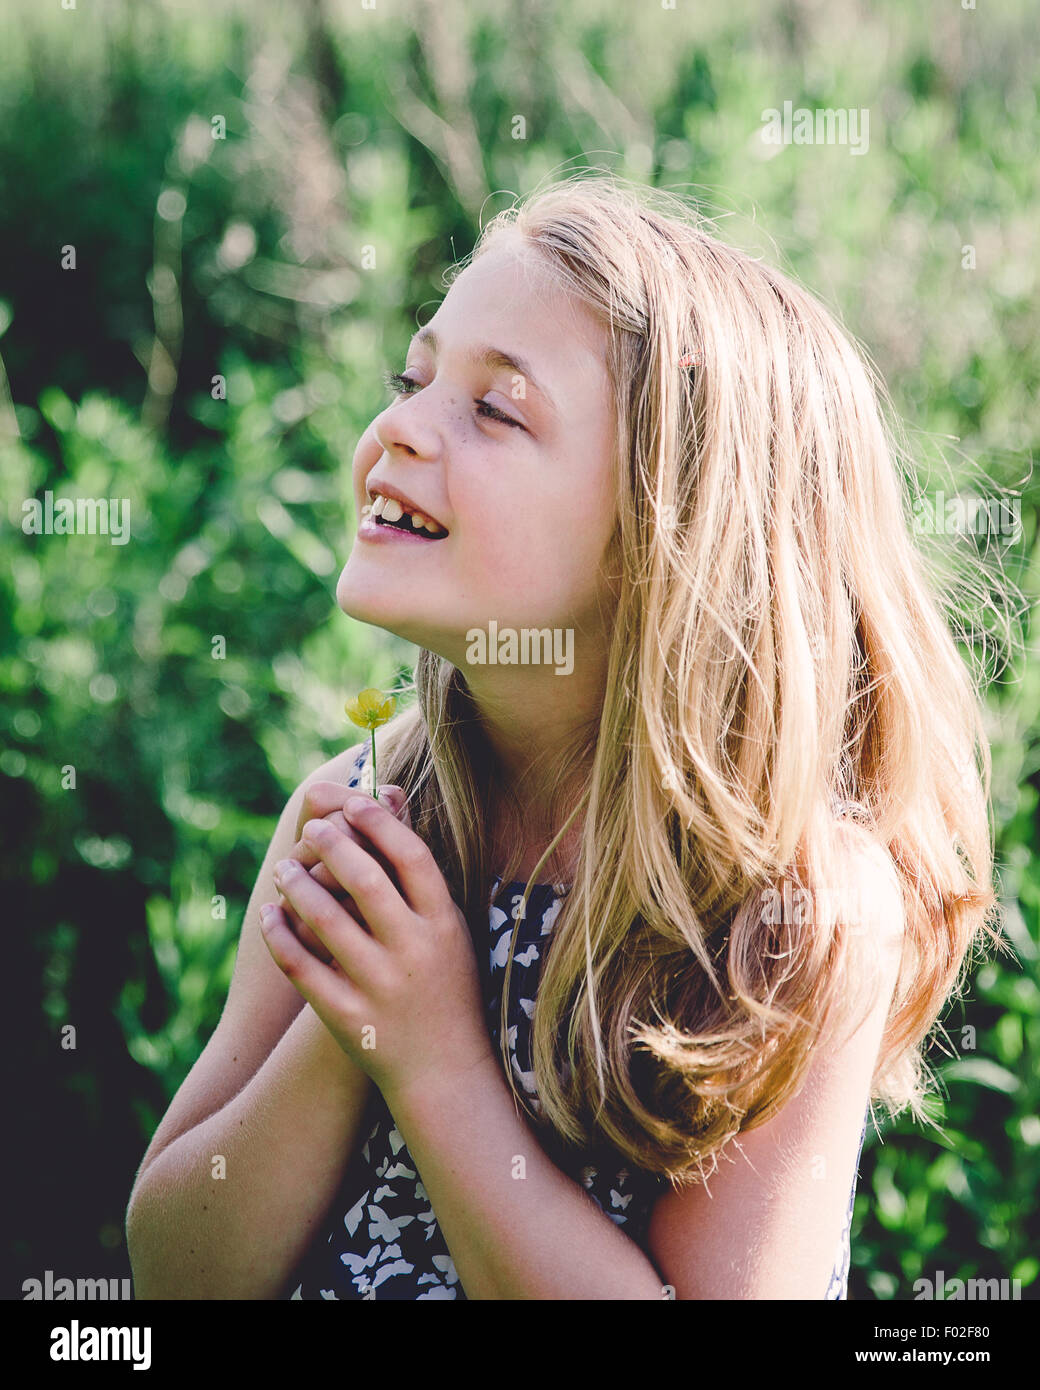 Retrato de una niña sonriente sosteniendo un buttercup bajo su barbilla Foto de stock